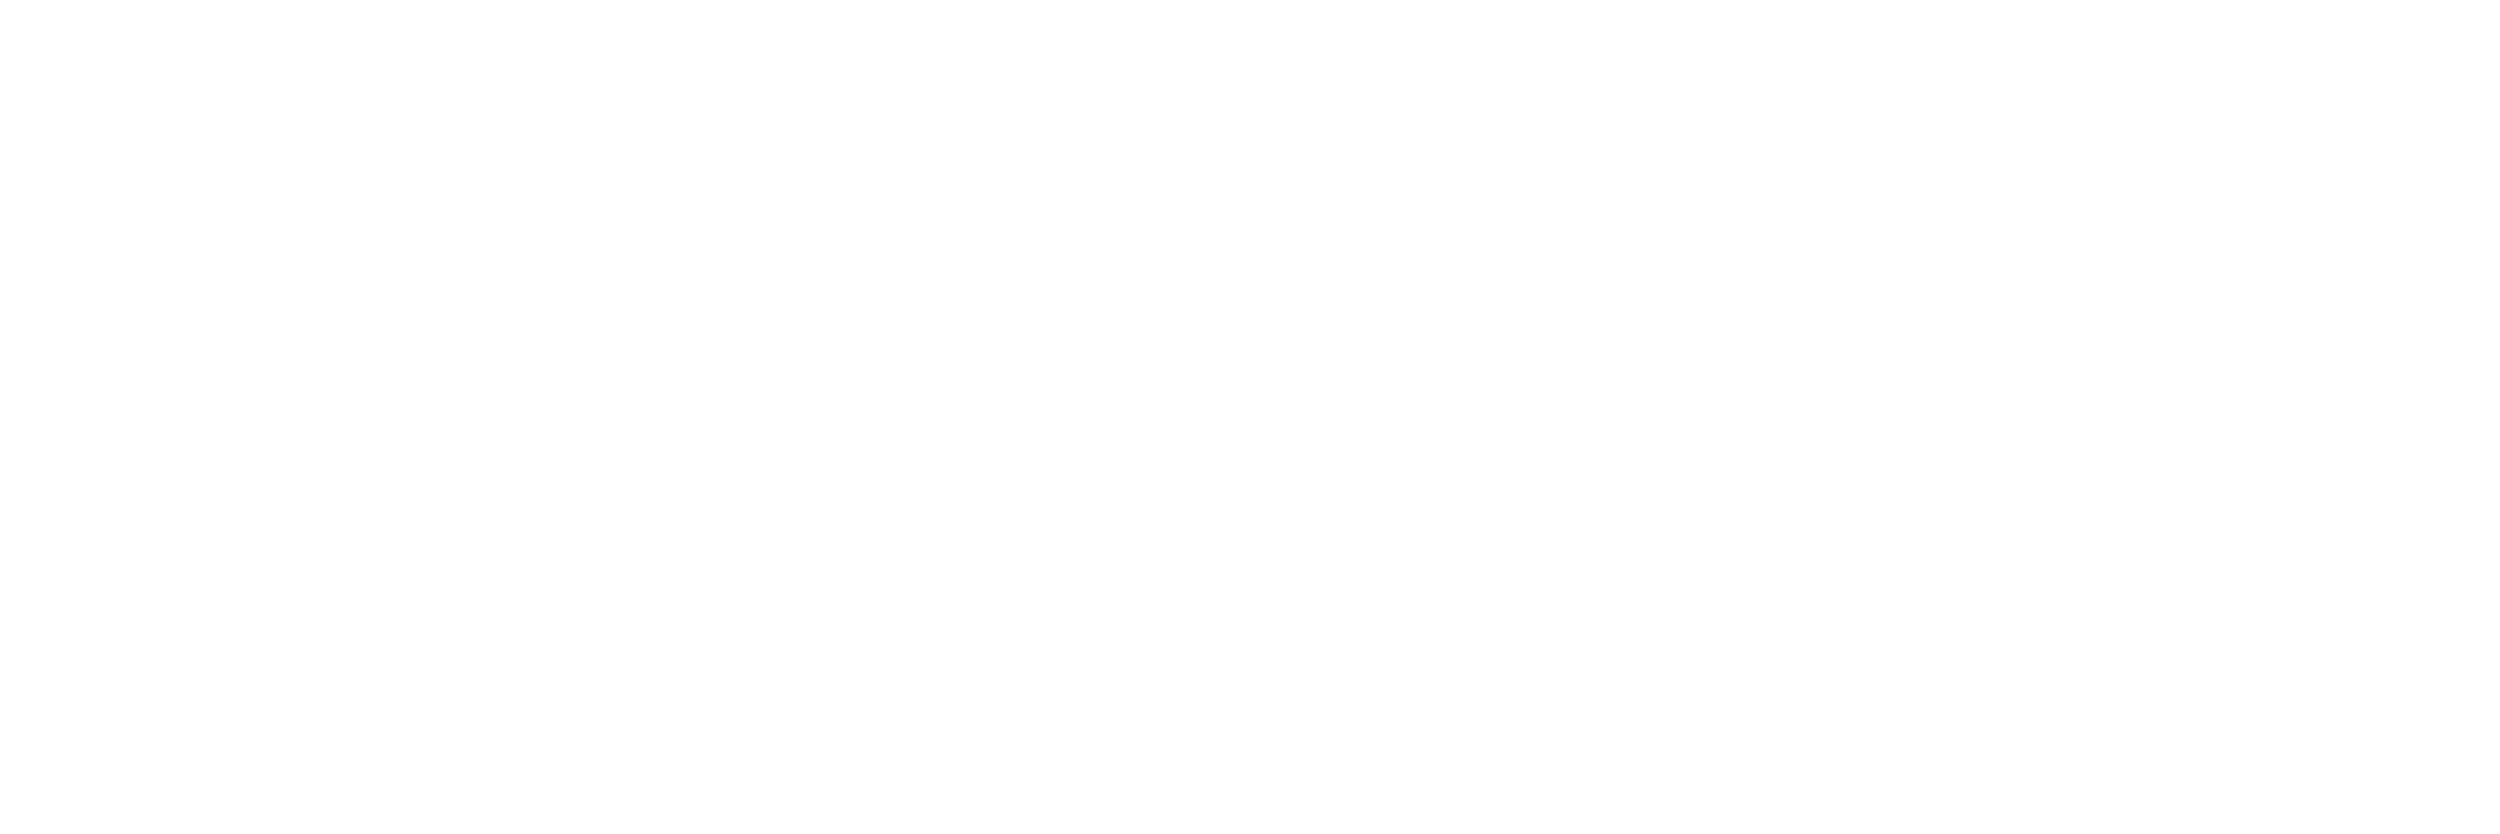 PittMoss